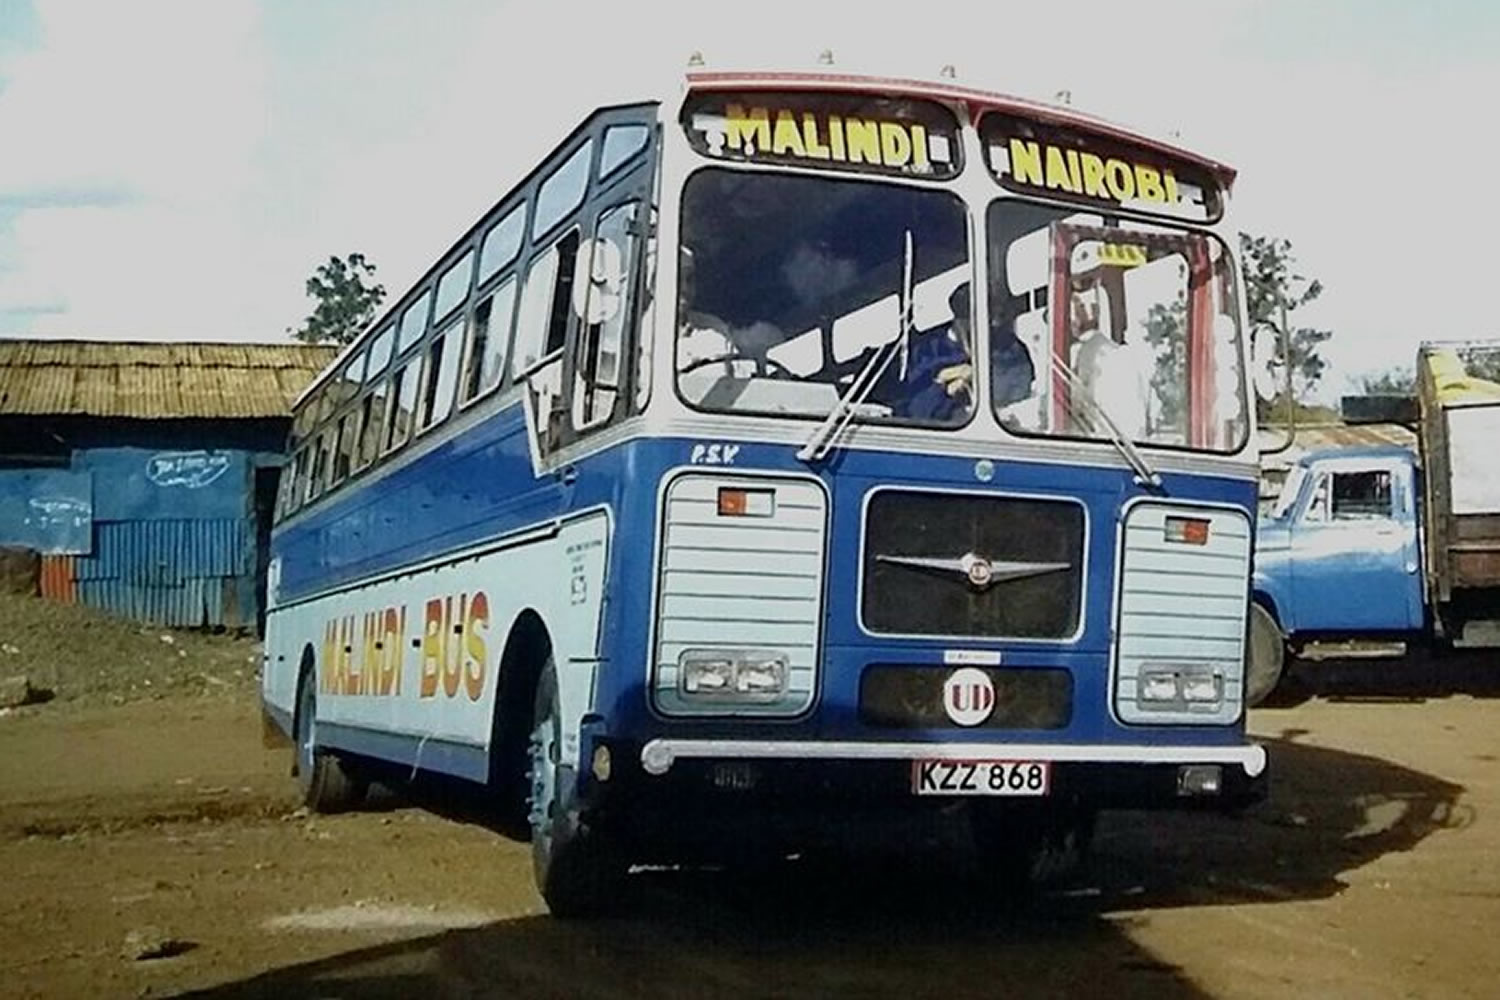 Malindi bus of Sheikh Omar Bin Dahman